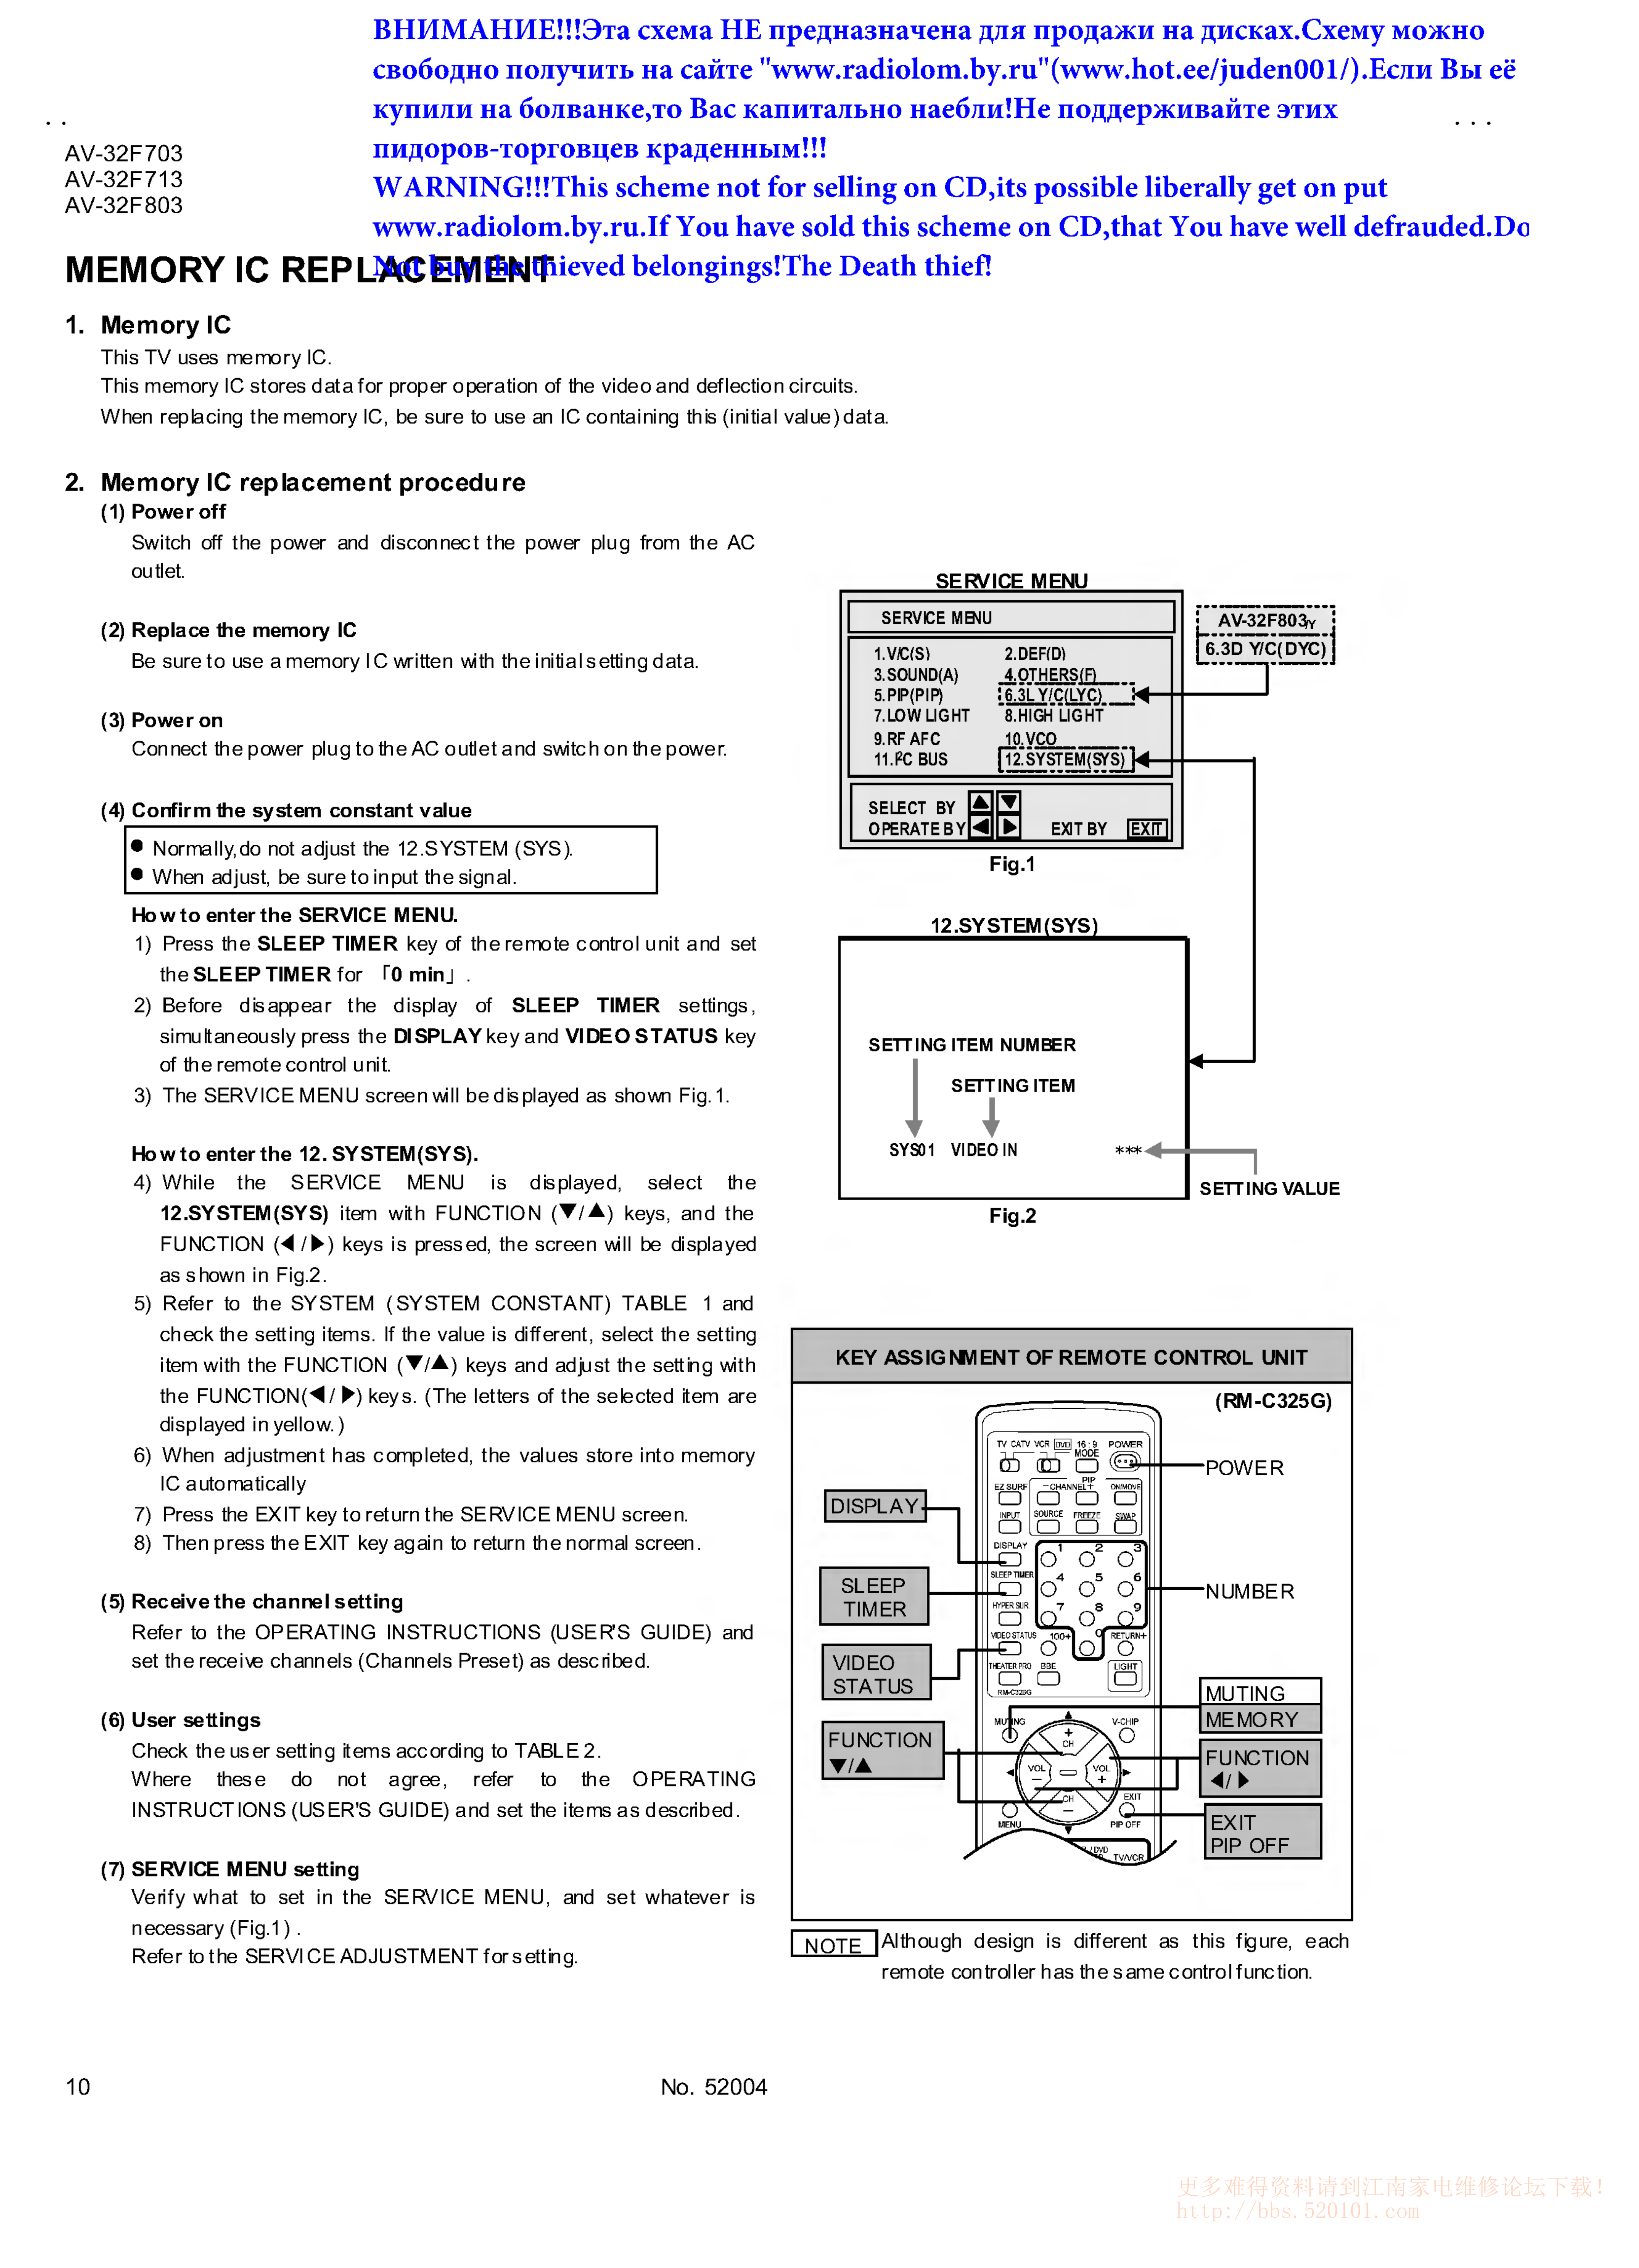 JVC胜利AV32F703彩电维修手册和图纸-9